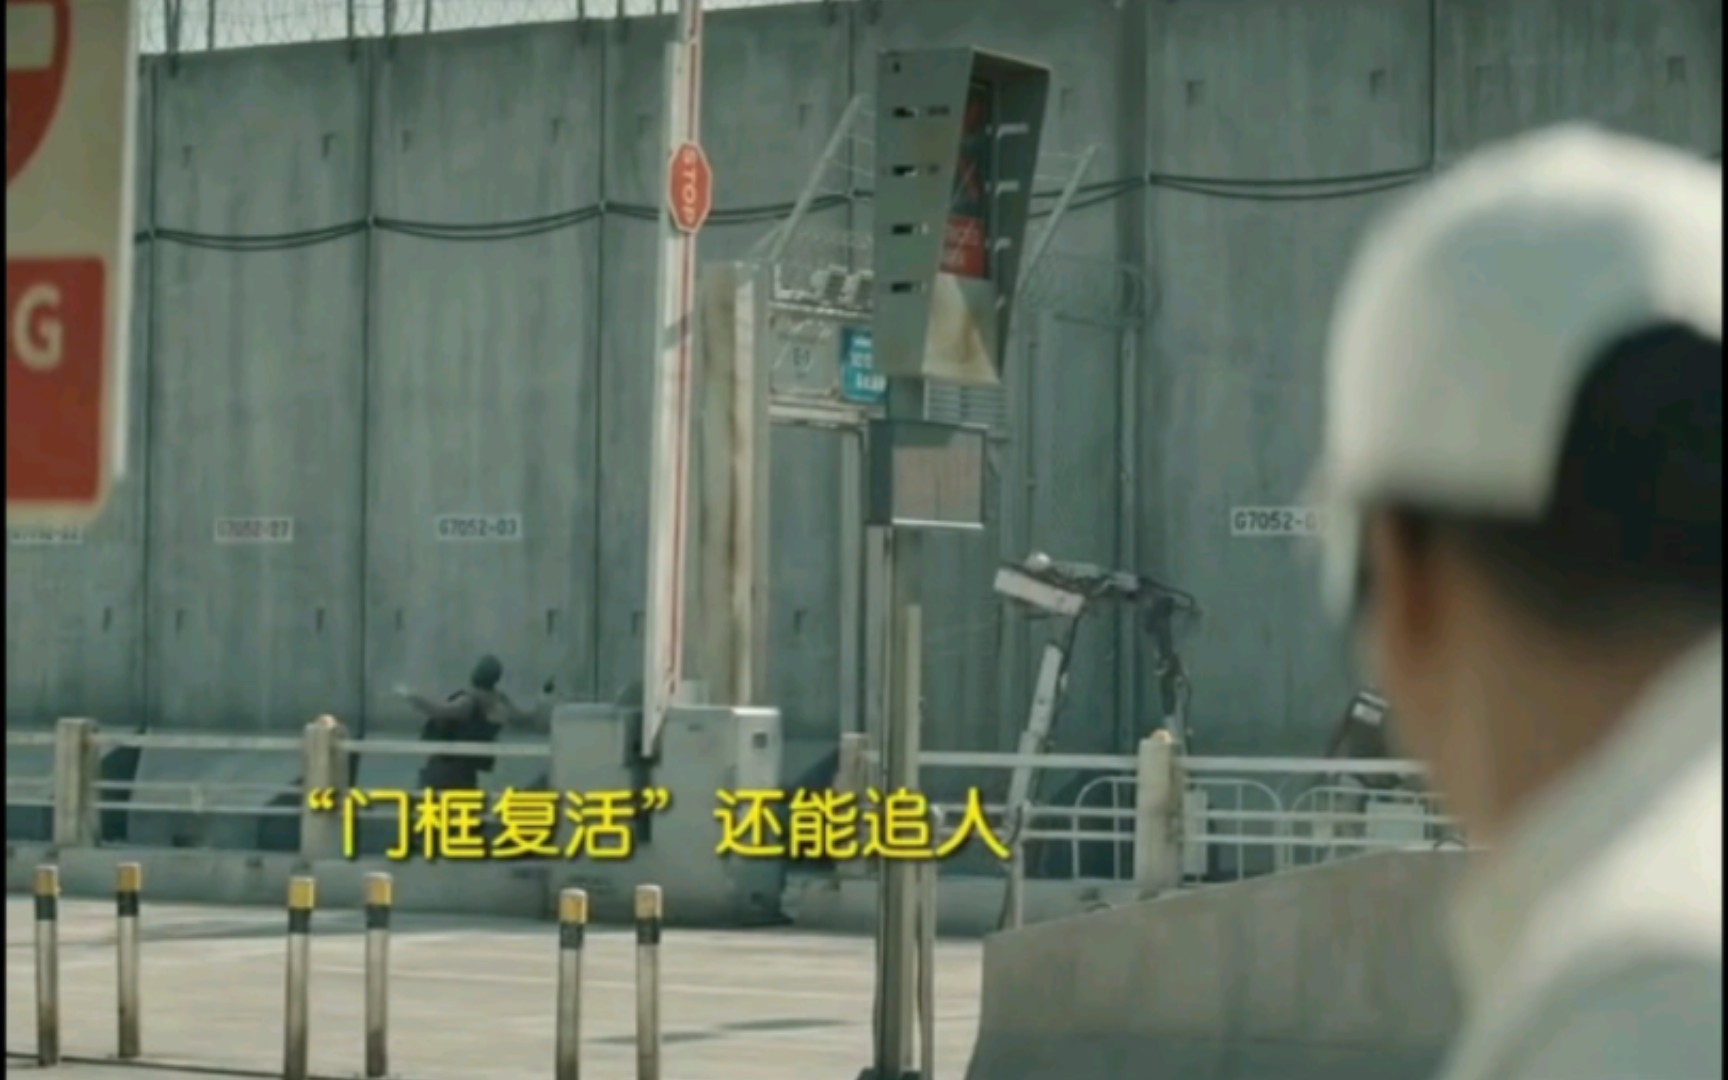 【流浪地球2】刘培强第一次见门框机器人 说出了大家都想说的话